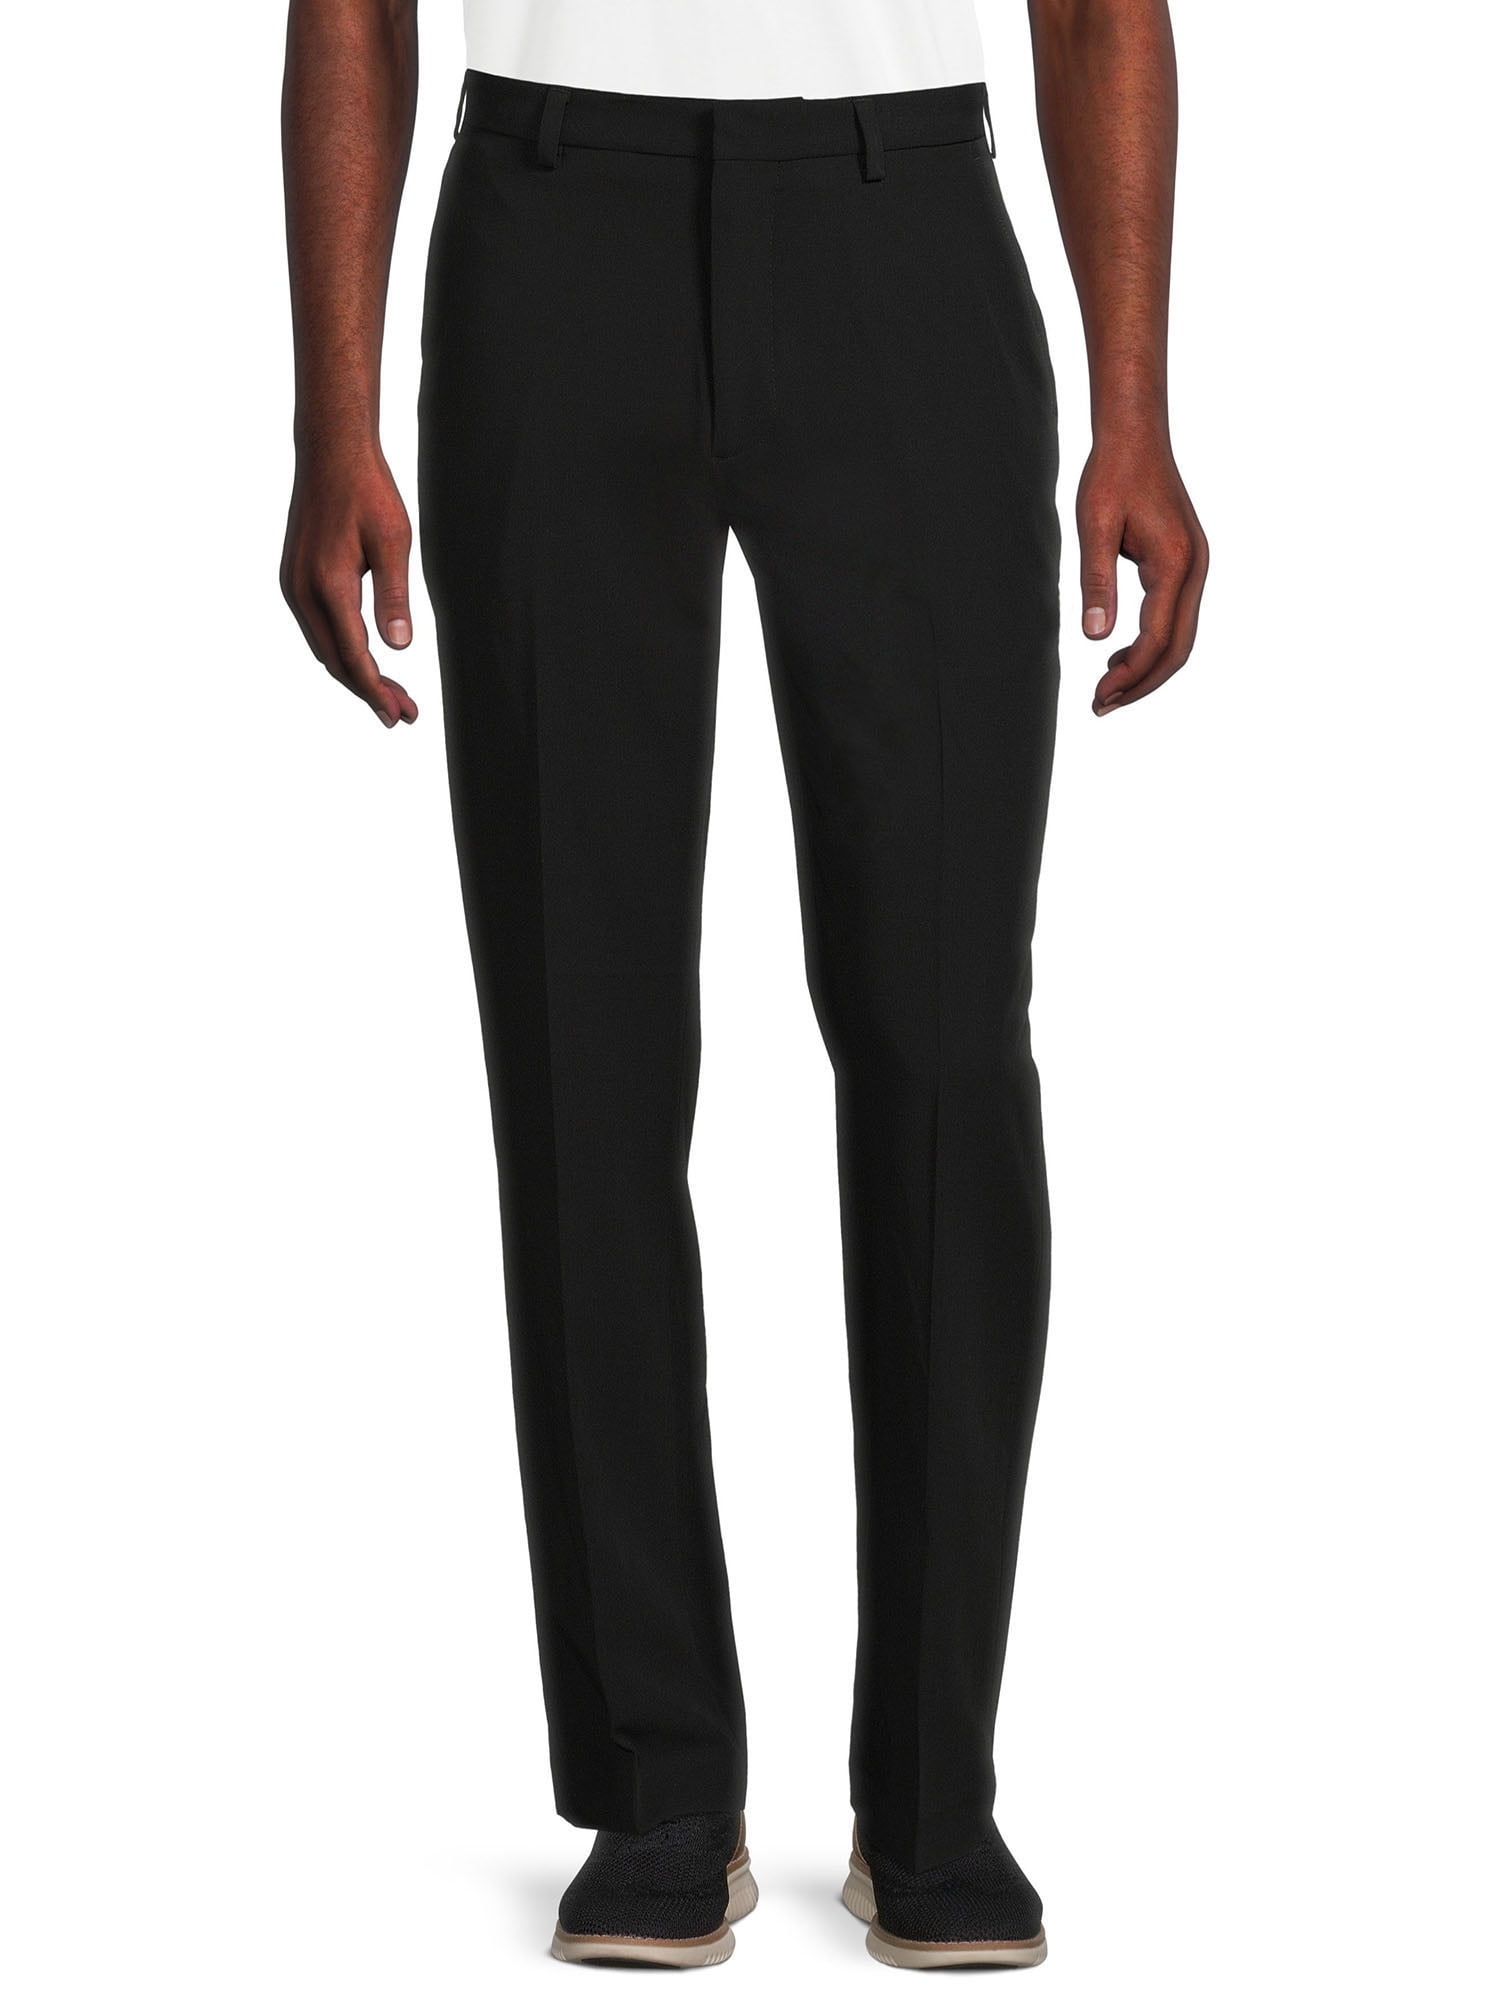 Skinny Black Suit Pants | boohooMAN USA